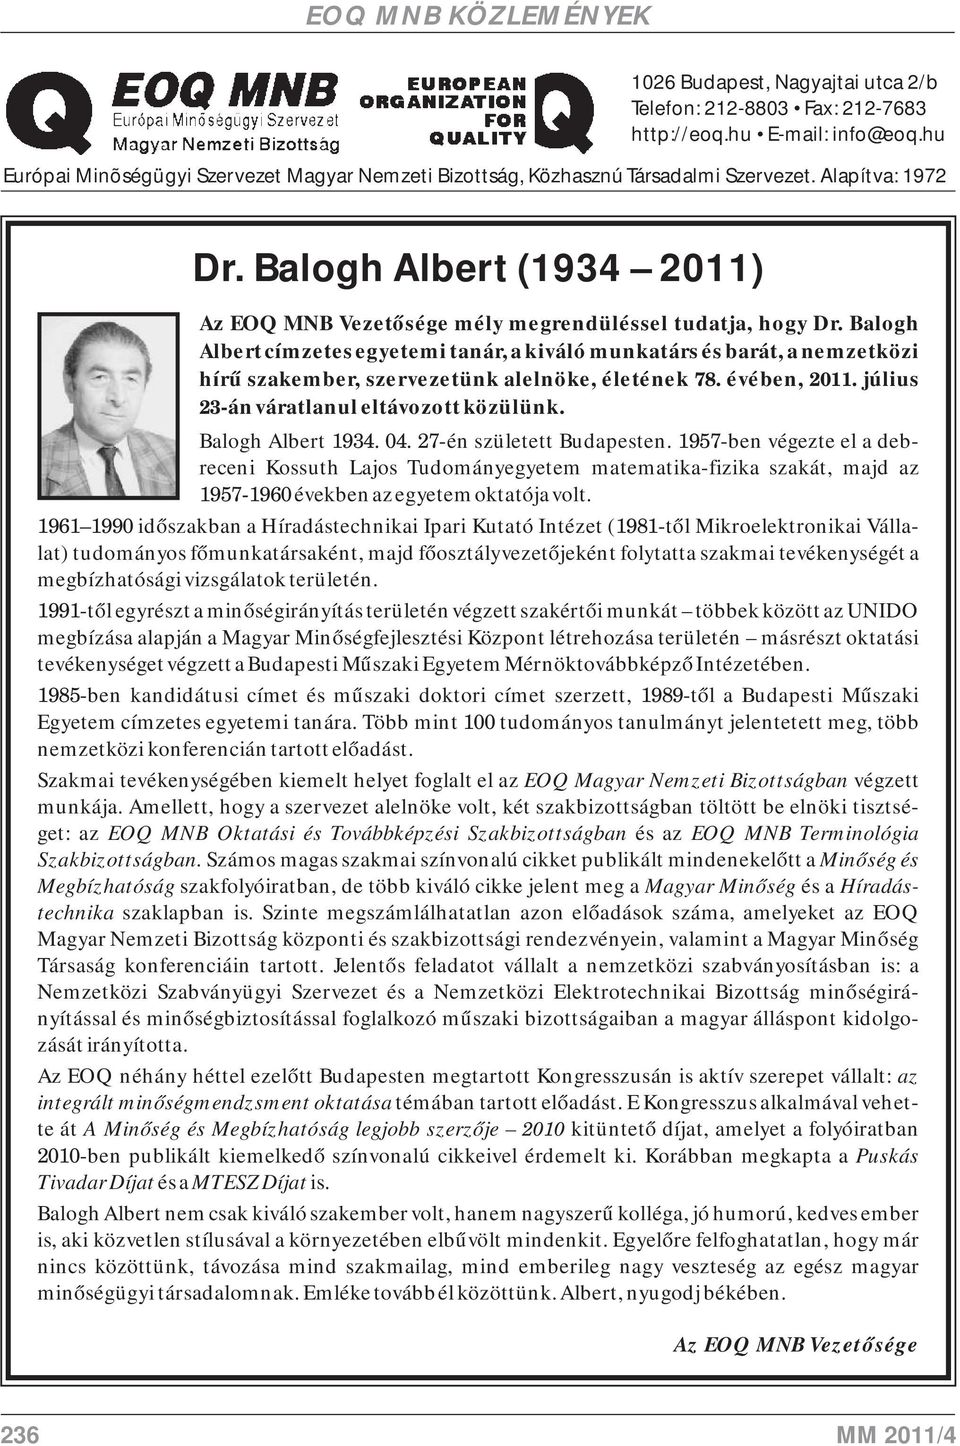 Balogh Albert címzetes egyetemi tanár, a kiváló munkatárs és barát, a nemzetközi hírű szakember, szervezetünk alelnöke, életének 78. évében, 2011. július 23-án váratlanul eltávozott közülünk.